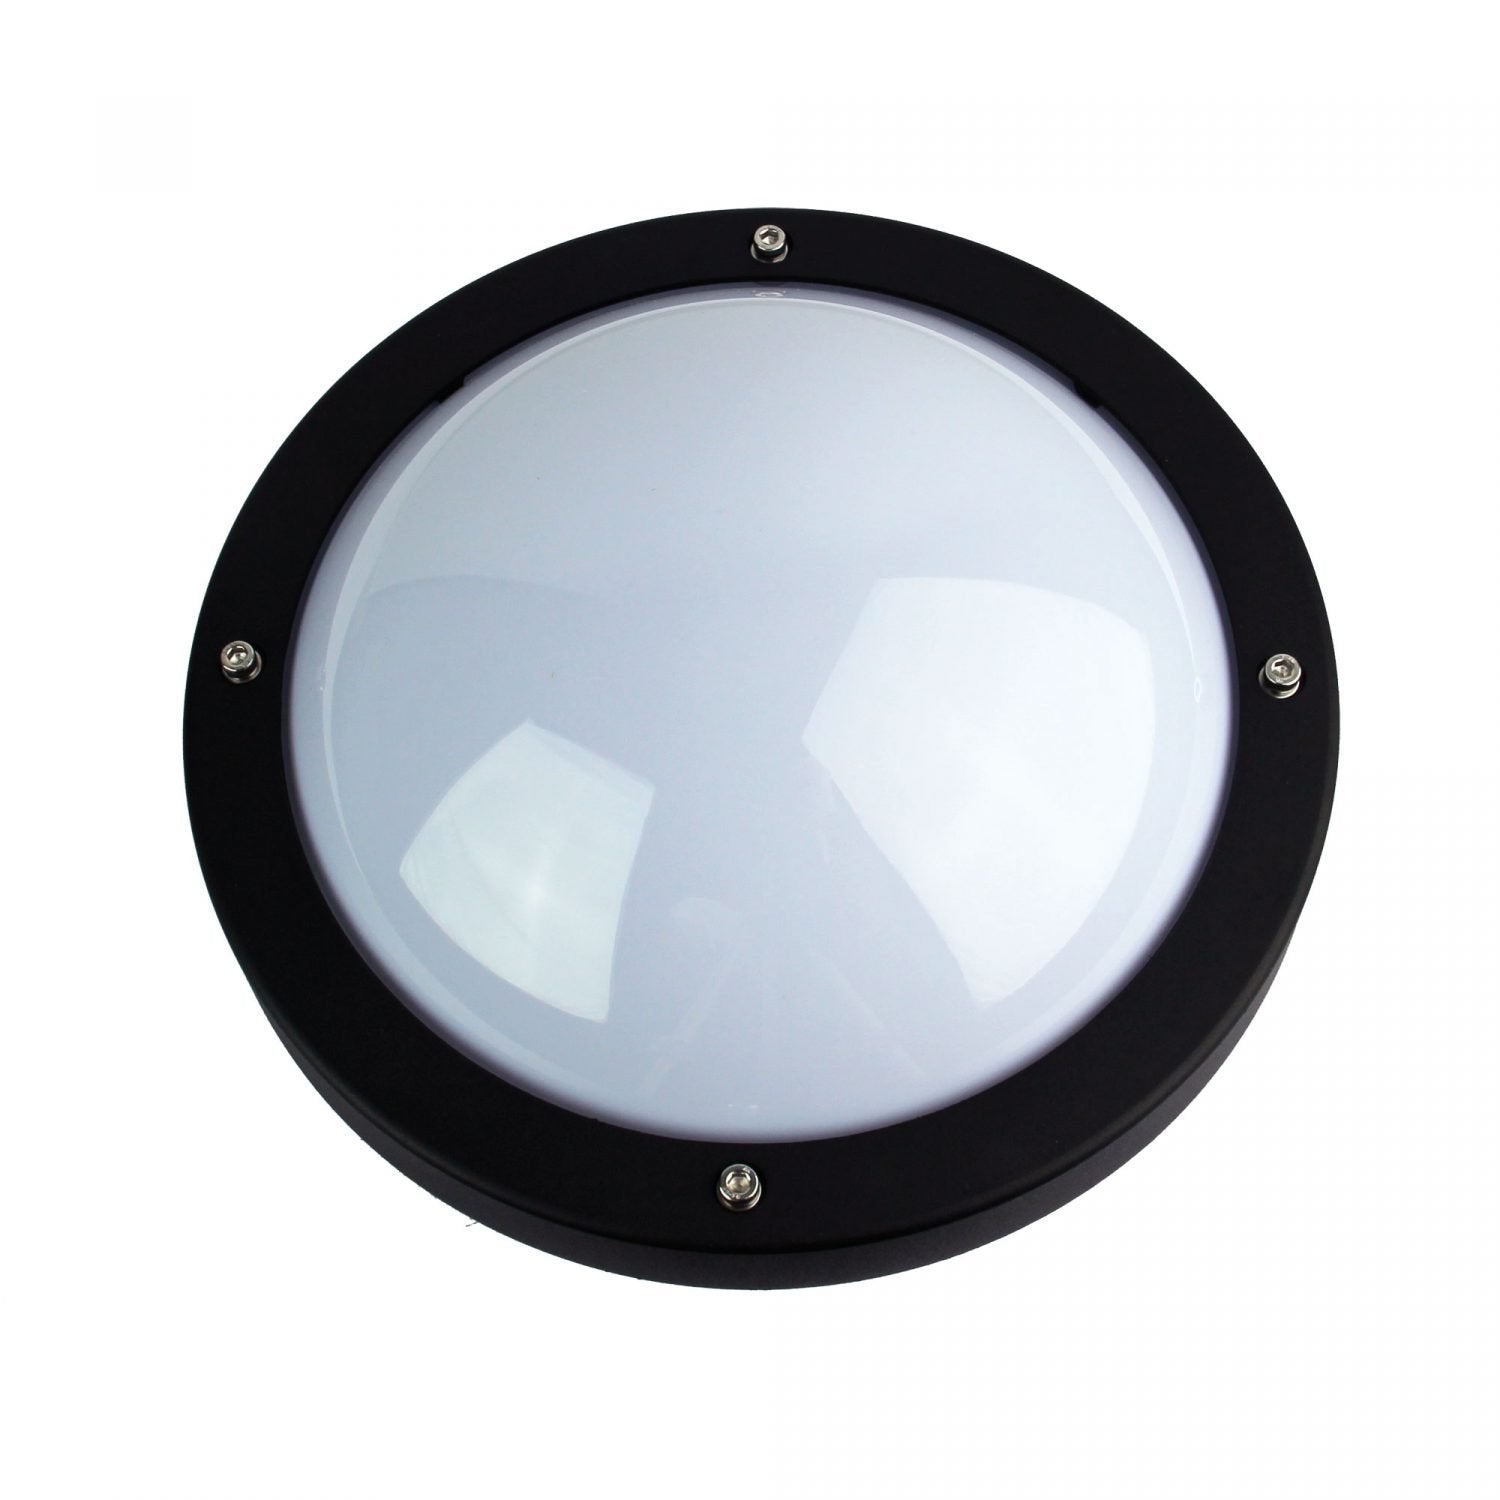 Primo 1 Light Outdoor Light Bulkhead Black Round - SG70570BK